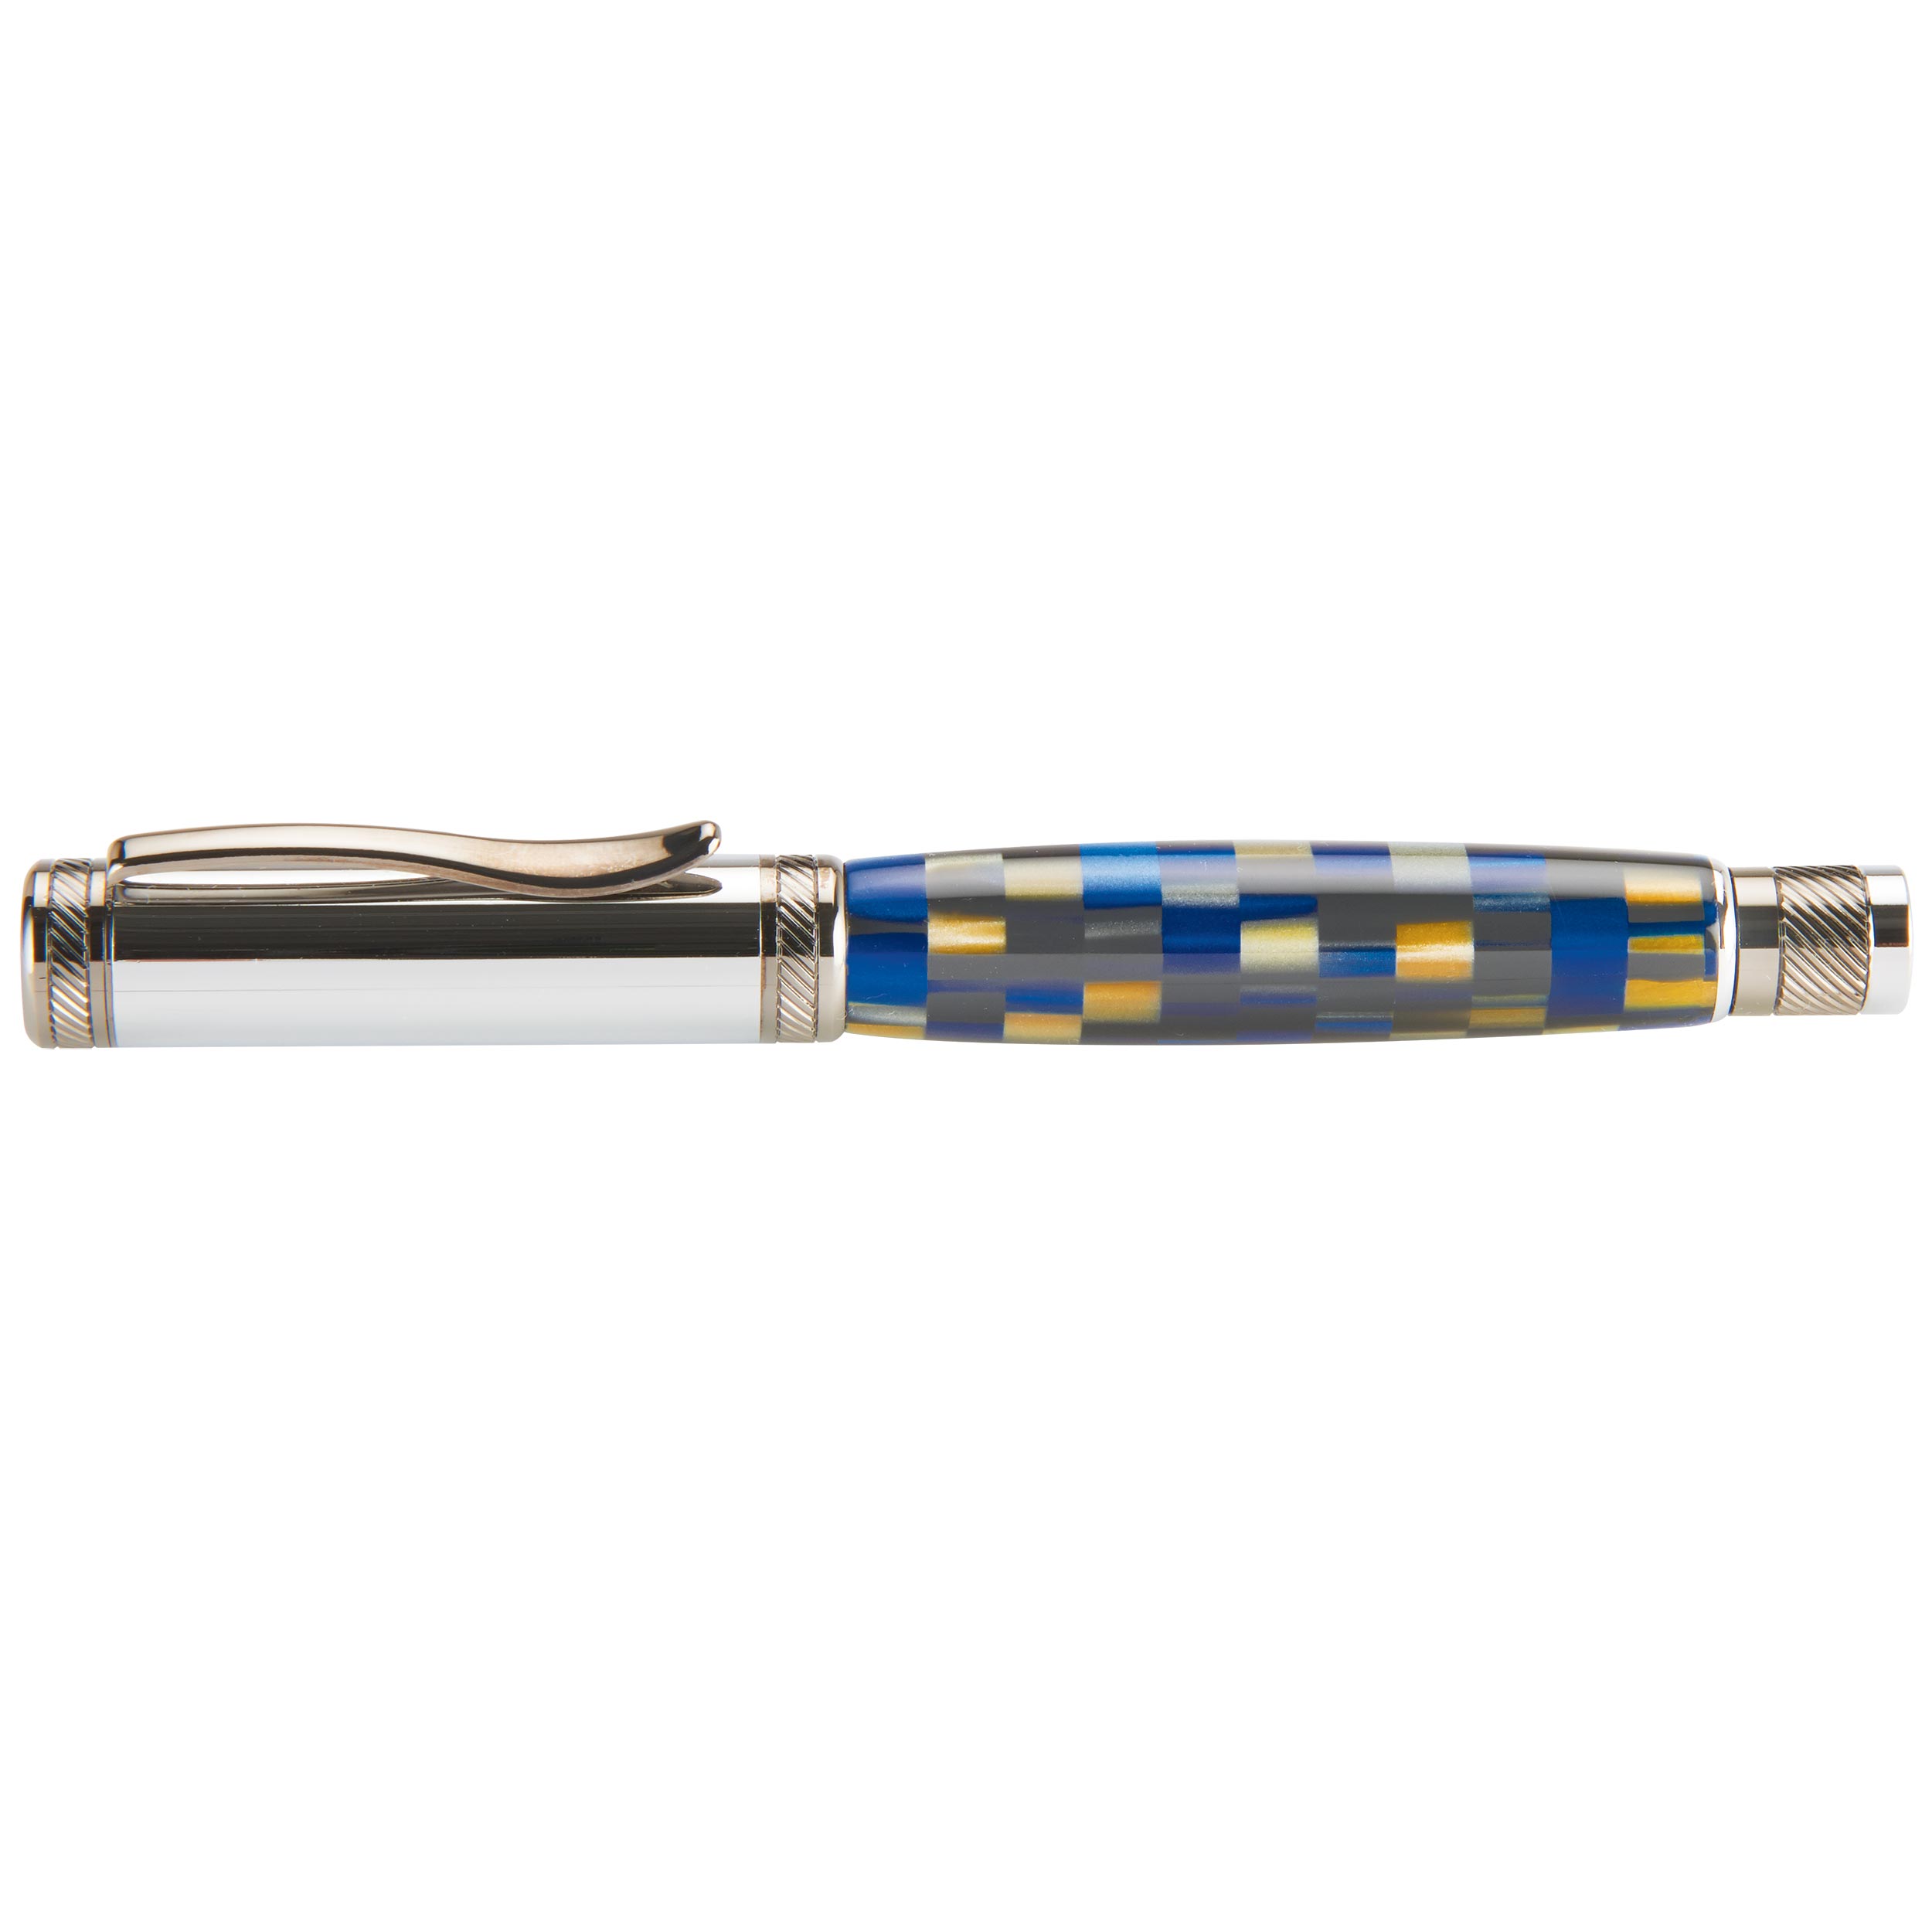 Attraction Magnetic Ballpoint Pen Kit - Chrome & Gunmetal